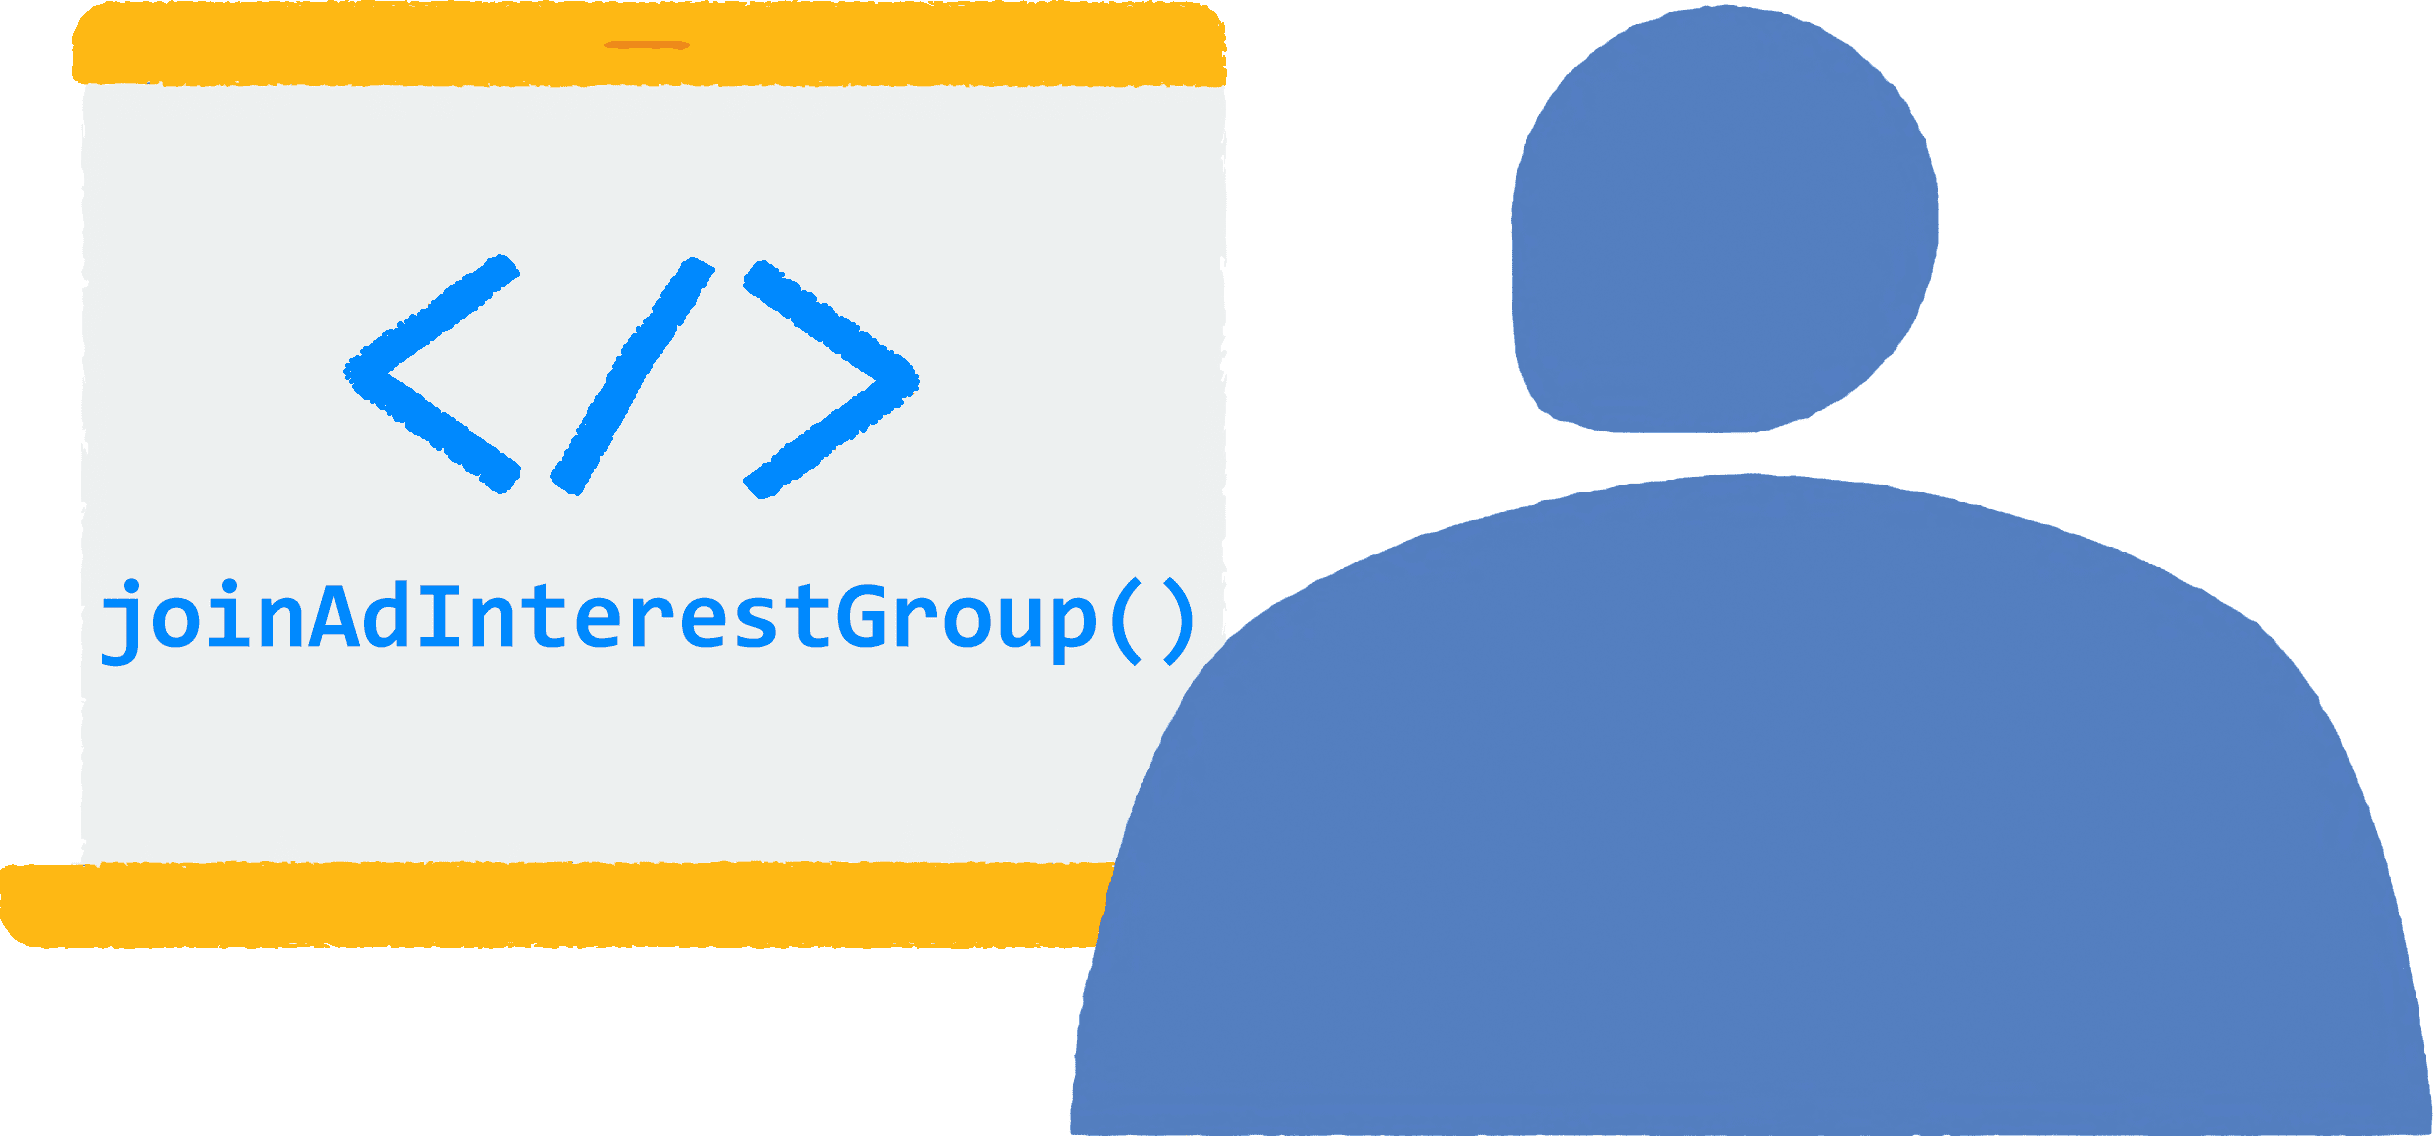 Пользователь открывает браузер на своем ноутбуке и посещает сайт. В браузере выполняется код JavaScript для присоединения к группам по интересам.